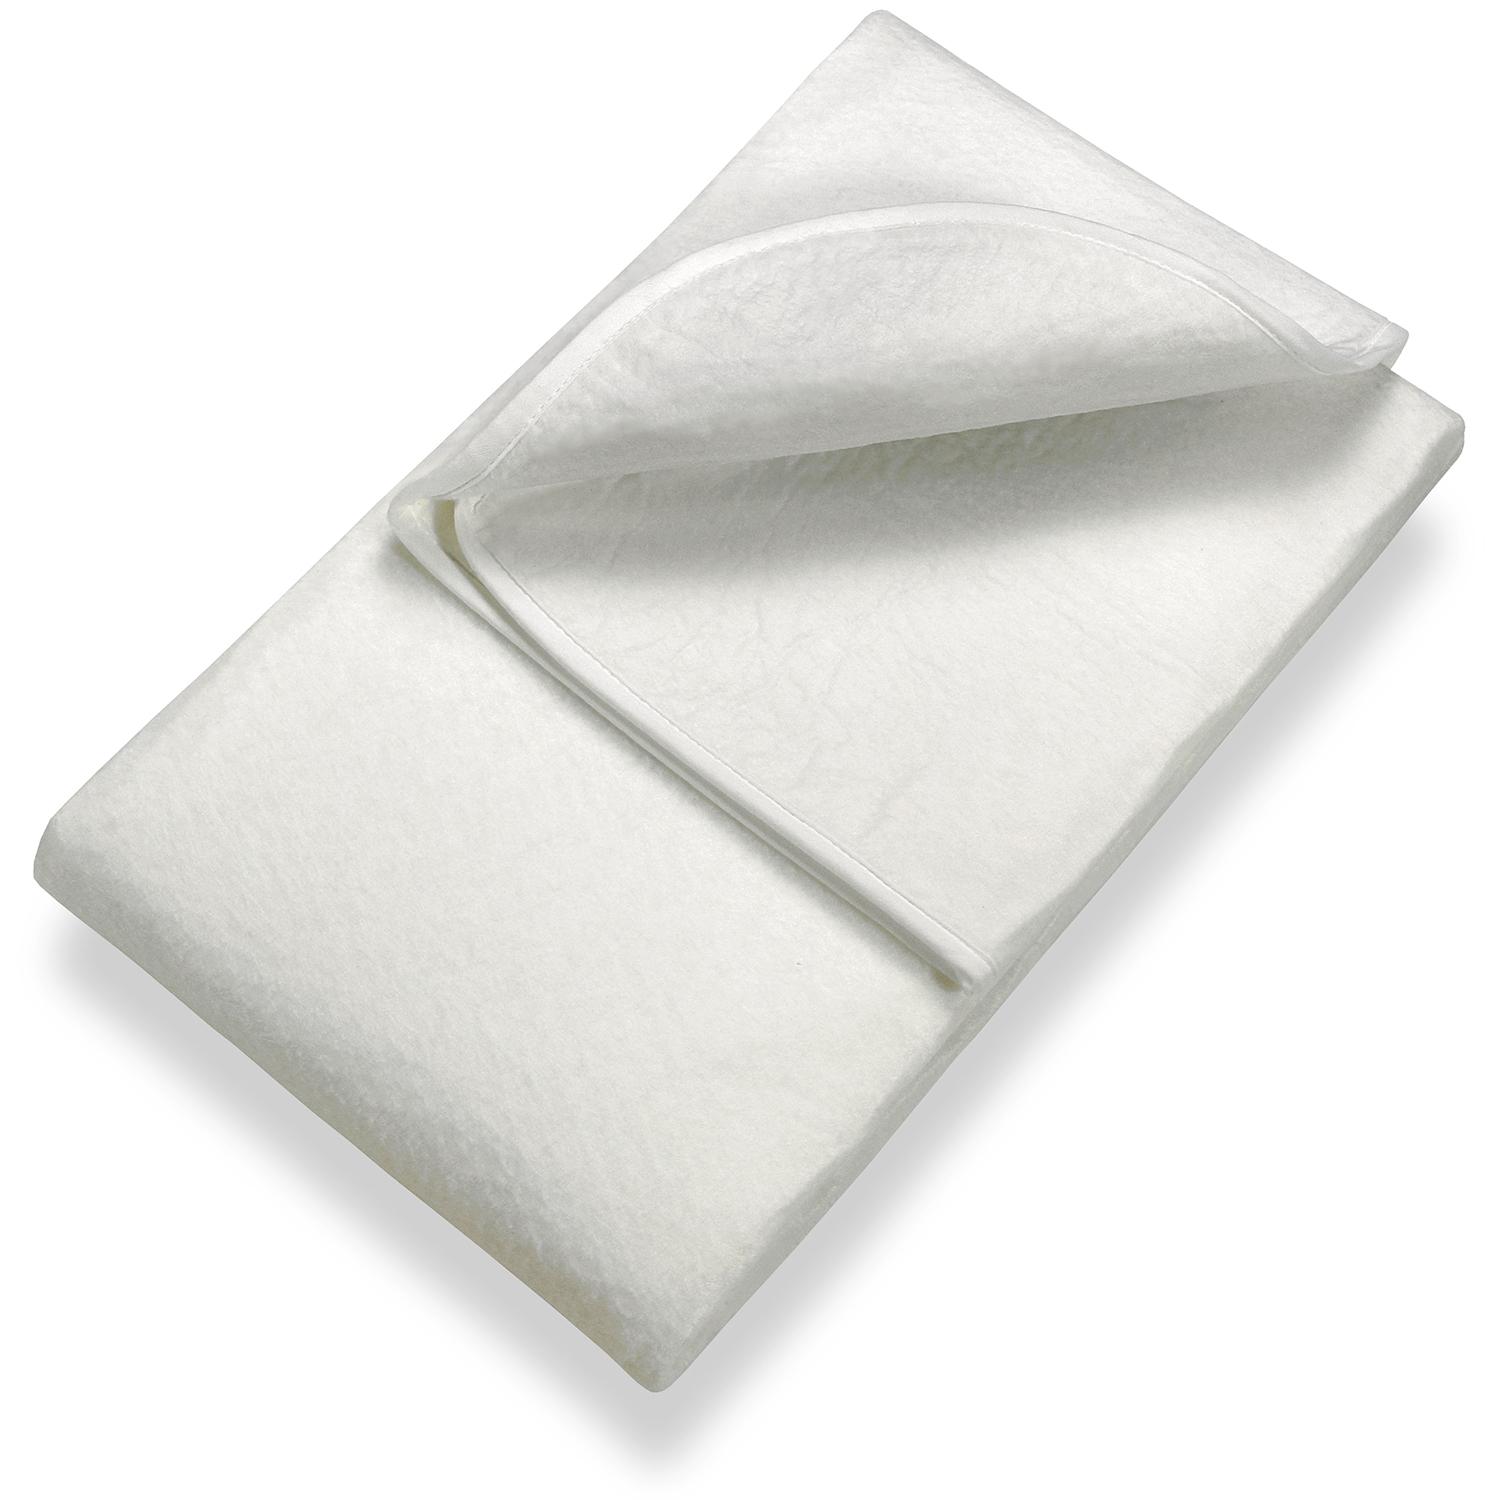 Sleezzz Základný ihličkový podklad pod matrac 90 x 200 cm, chránič matraca na lamelový rošt, biely